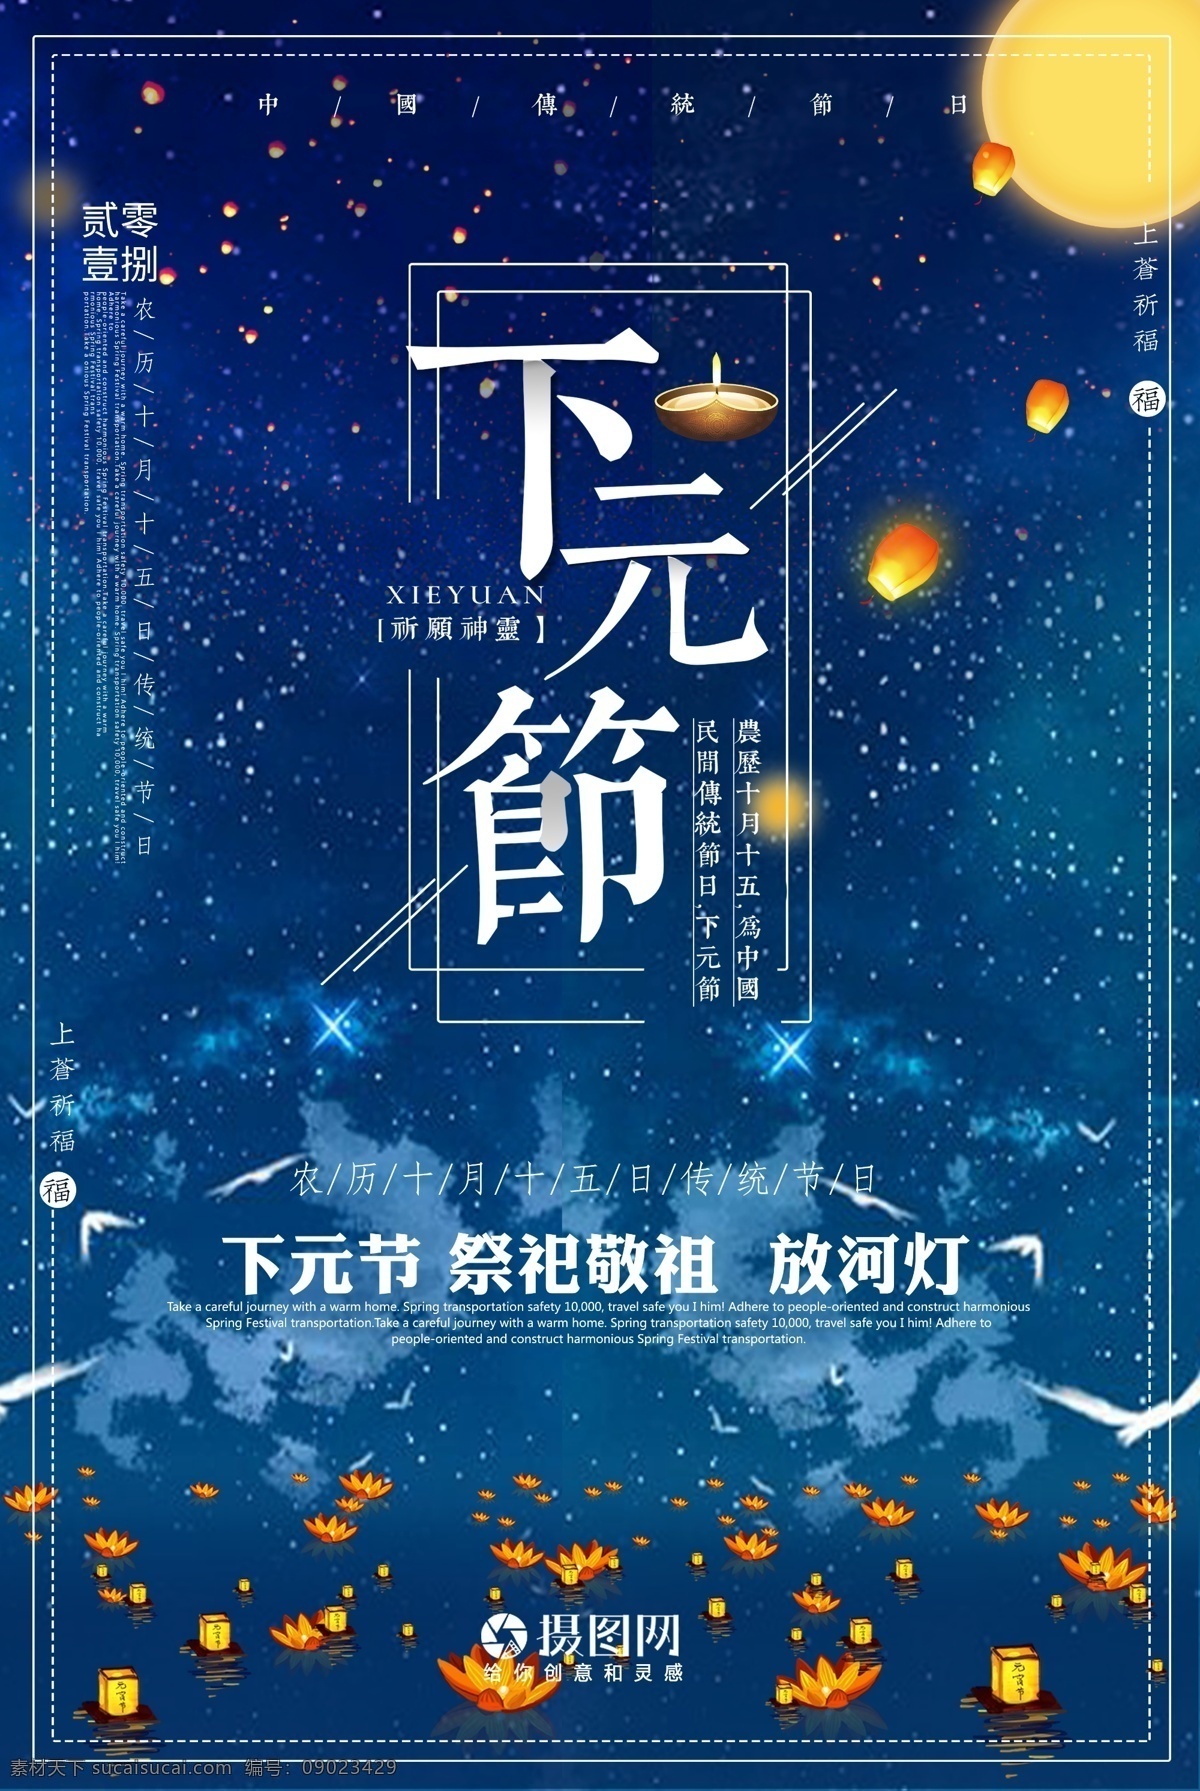 下元 节 节日 海报 下元节 中国传统 鬼节 祭祖 月亮 七月十五 孔明灯 水灯 节日海报